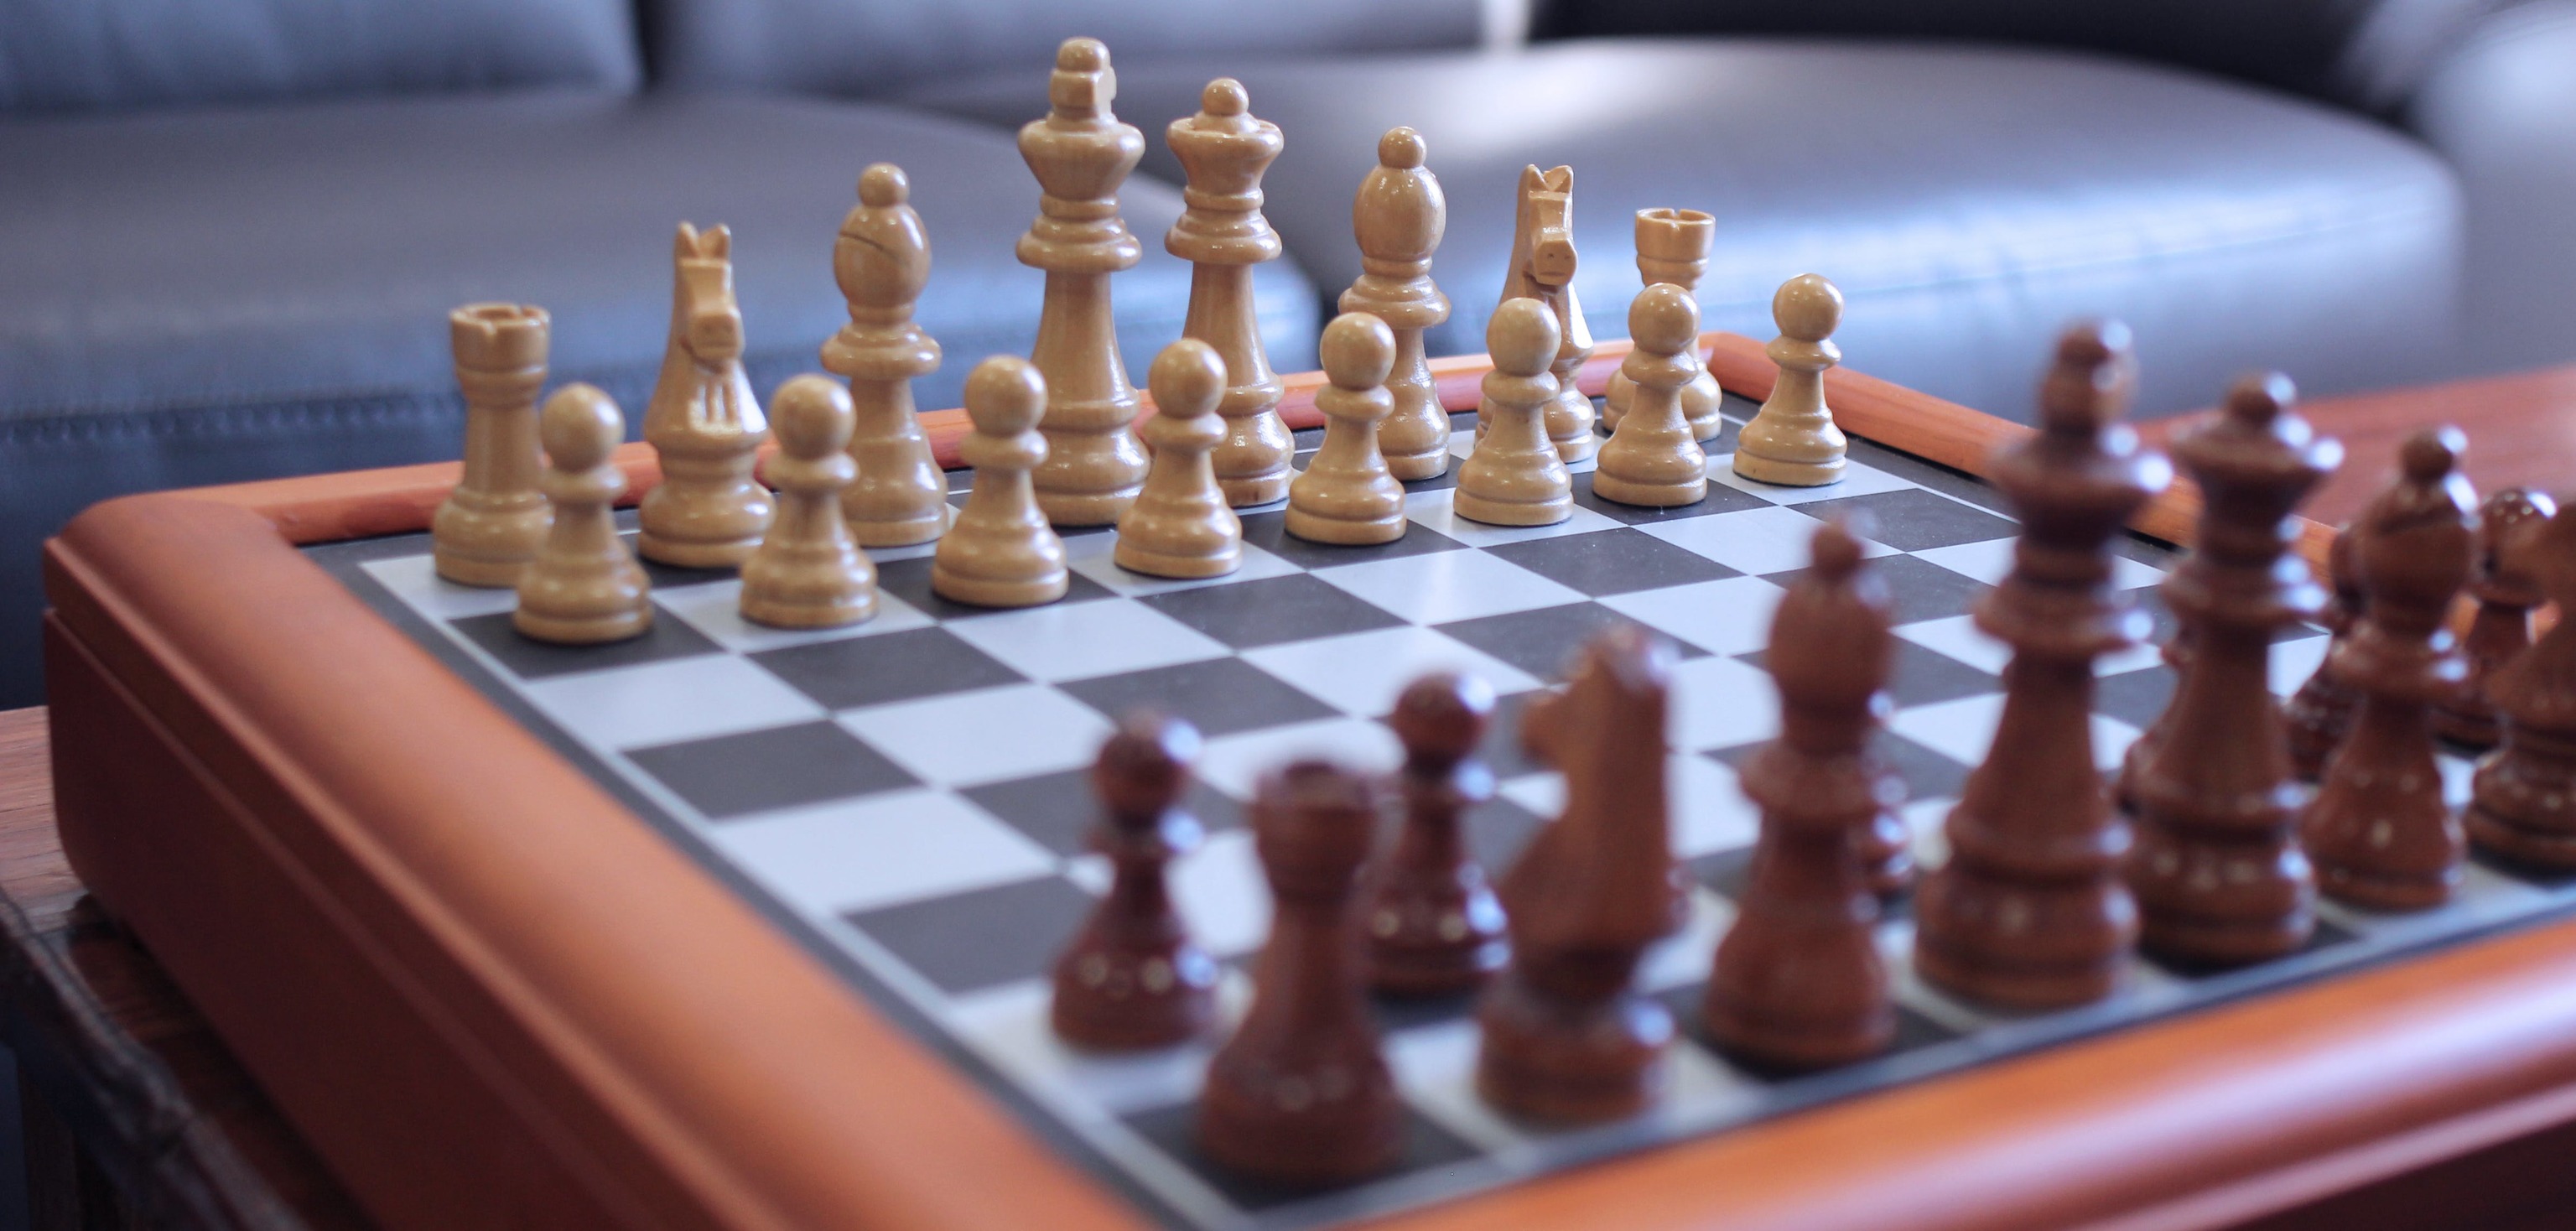 Juegos para fortalecer la memoria: ajedrez